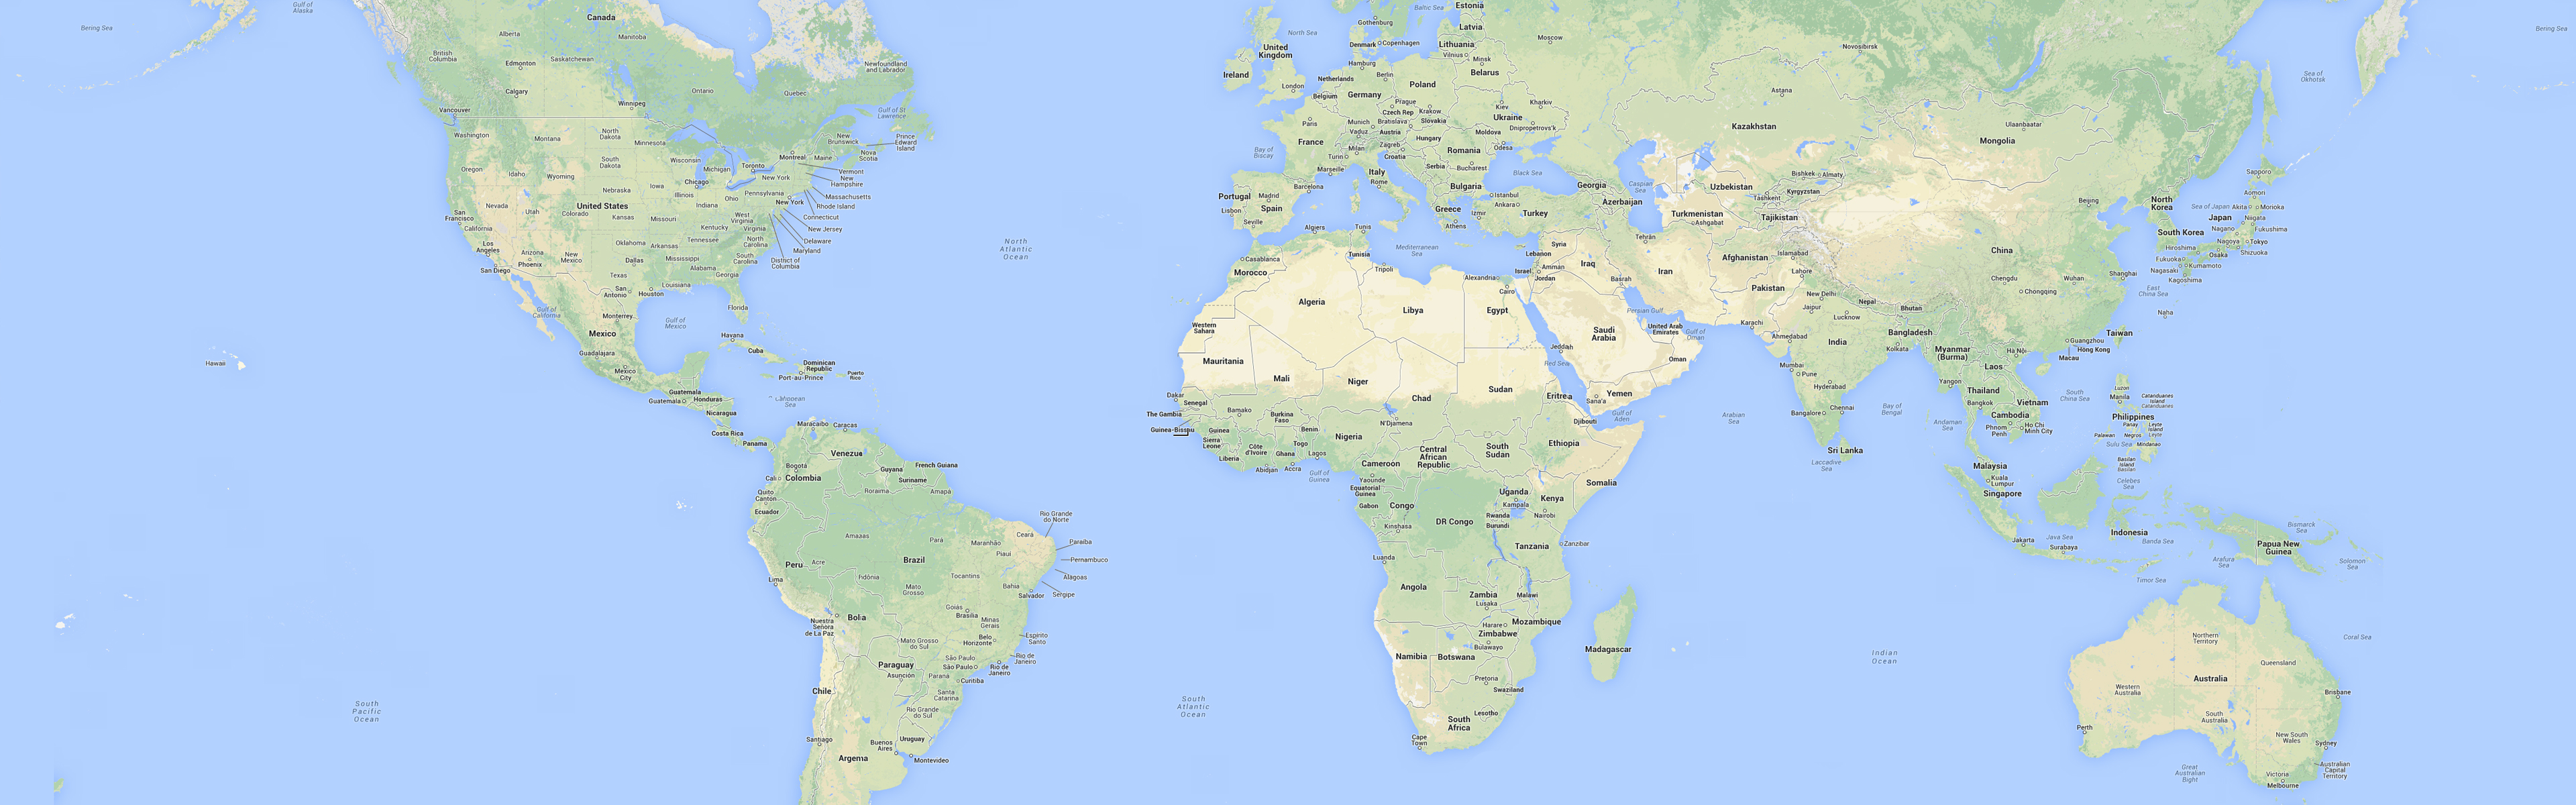 A Tad Bit Smaller, The World Map Hd Wallpaper - Atlas , HD Wallpaper & Backgrounds